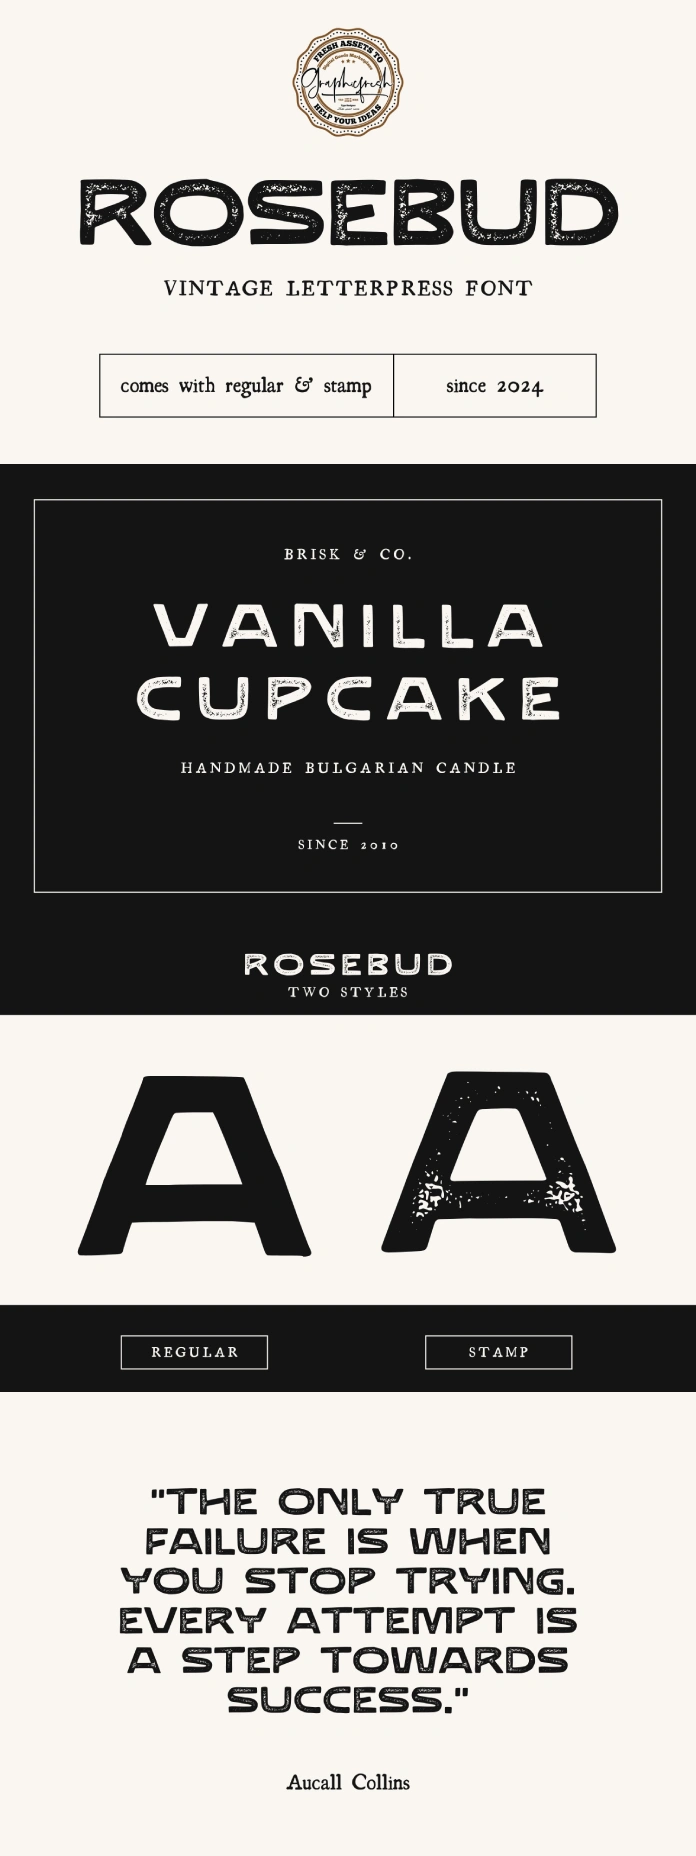 Rosebud - Vintage Letterpress Font by Graphicfresh